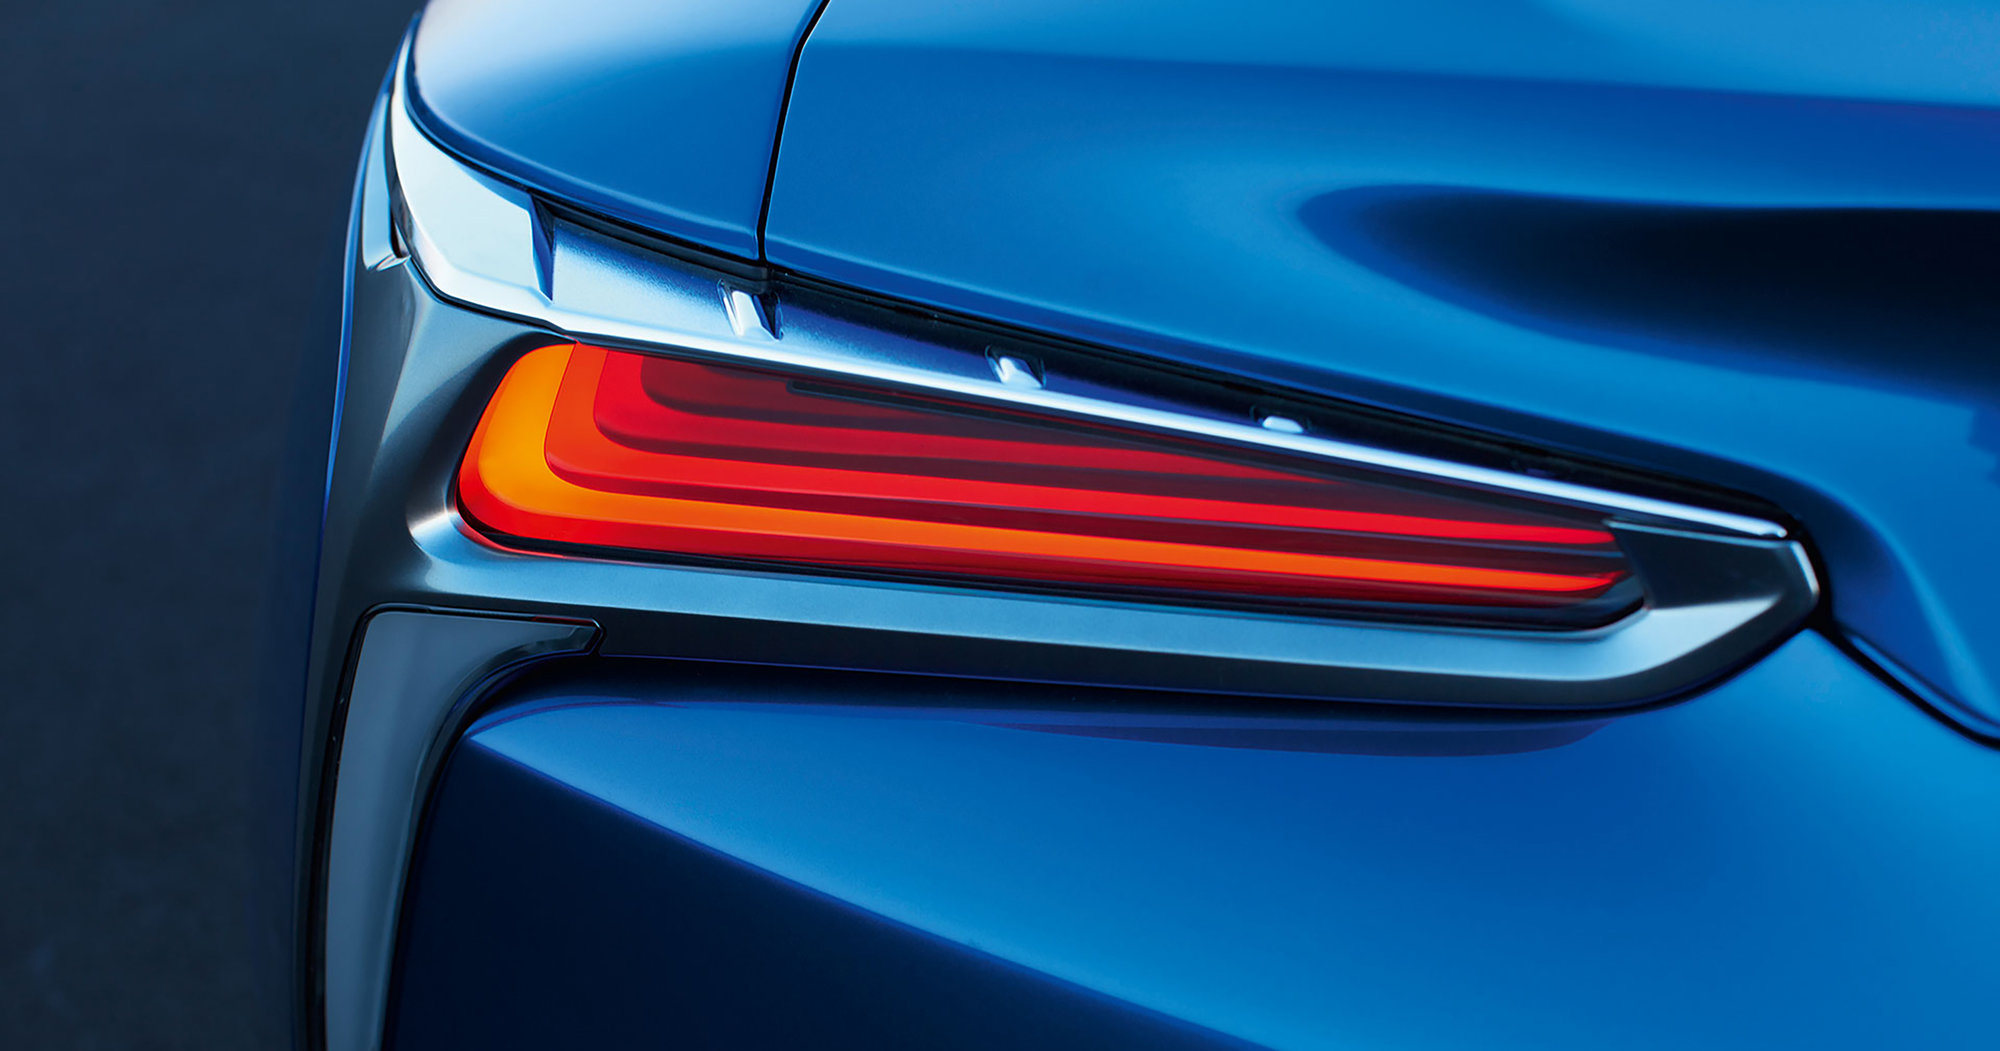 10 detalles increíbles del coupé Lexus LC 2021